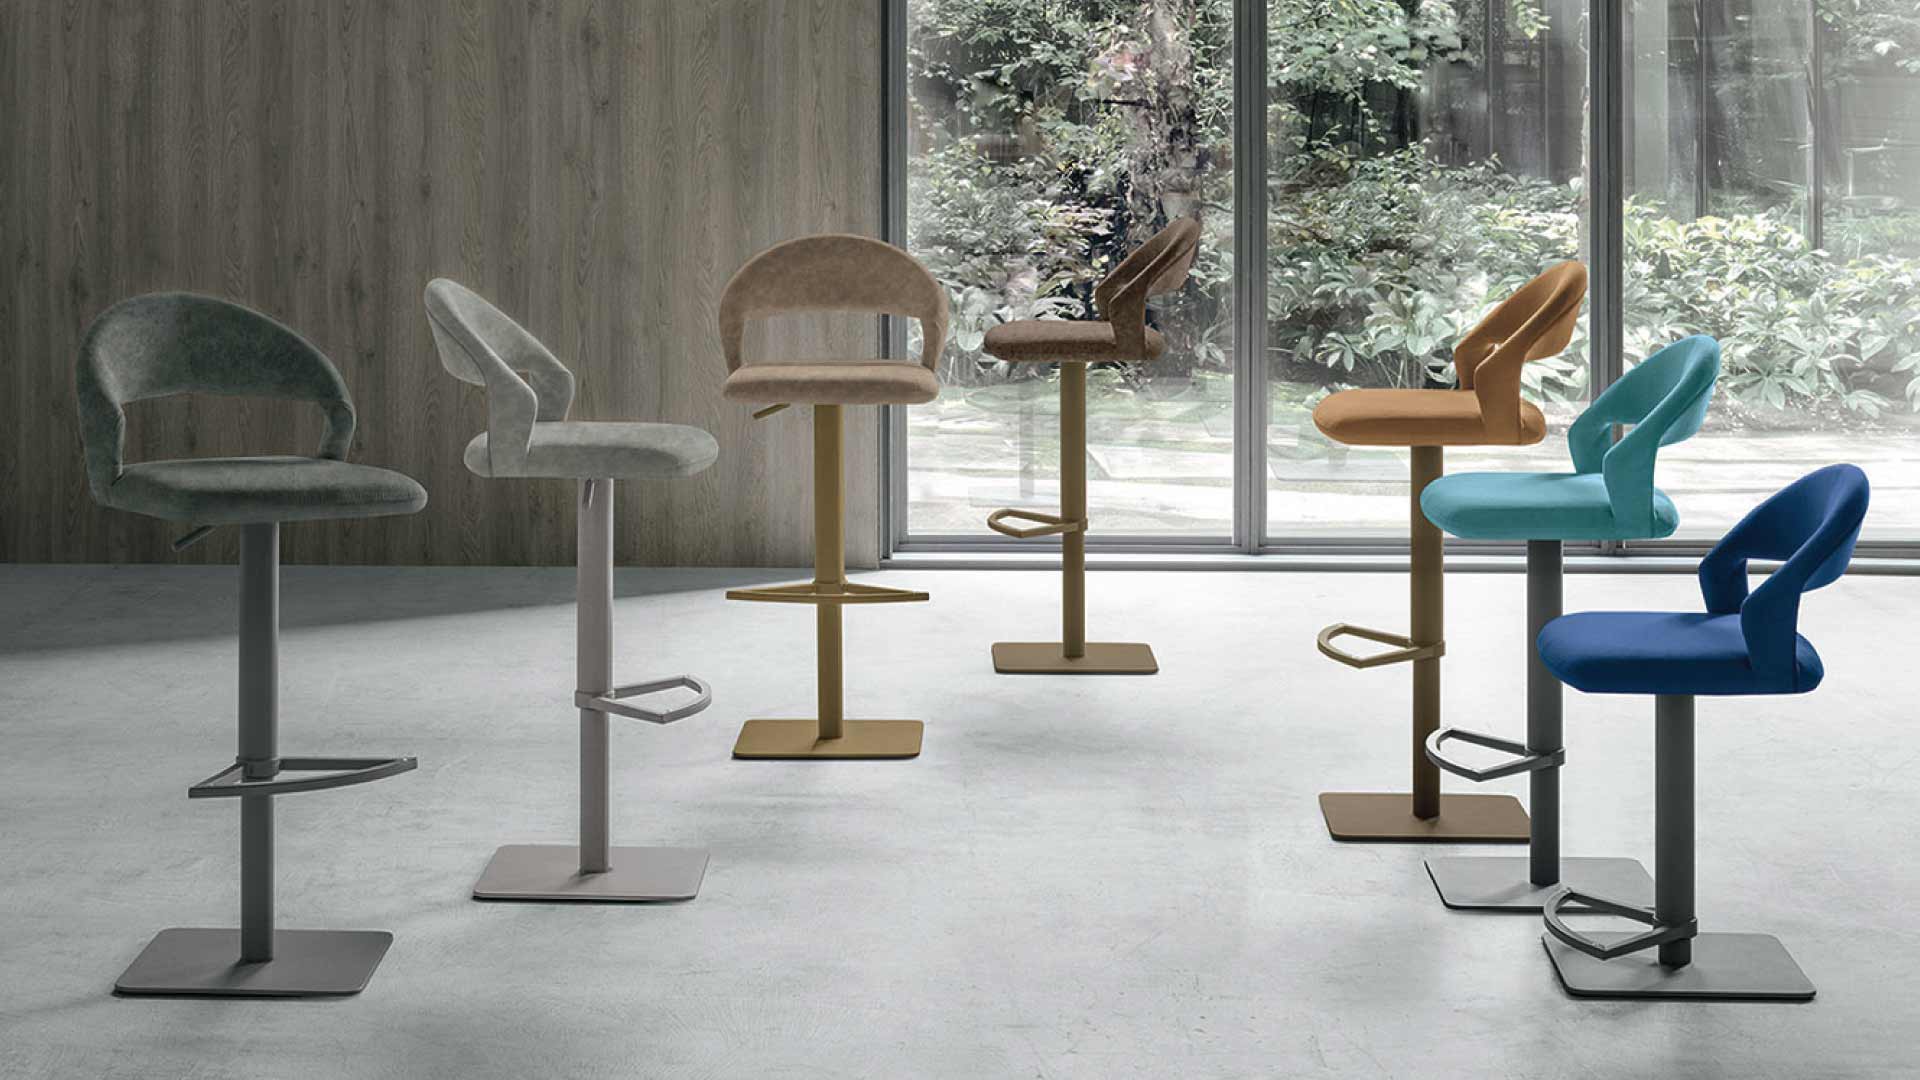 moderne barske stolice razlicitih boja nasumicno poredjane u prostoriji